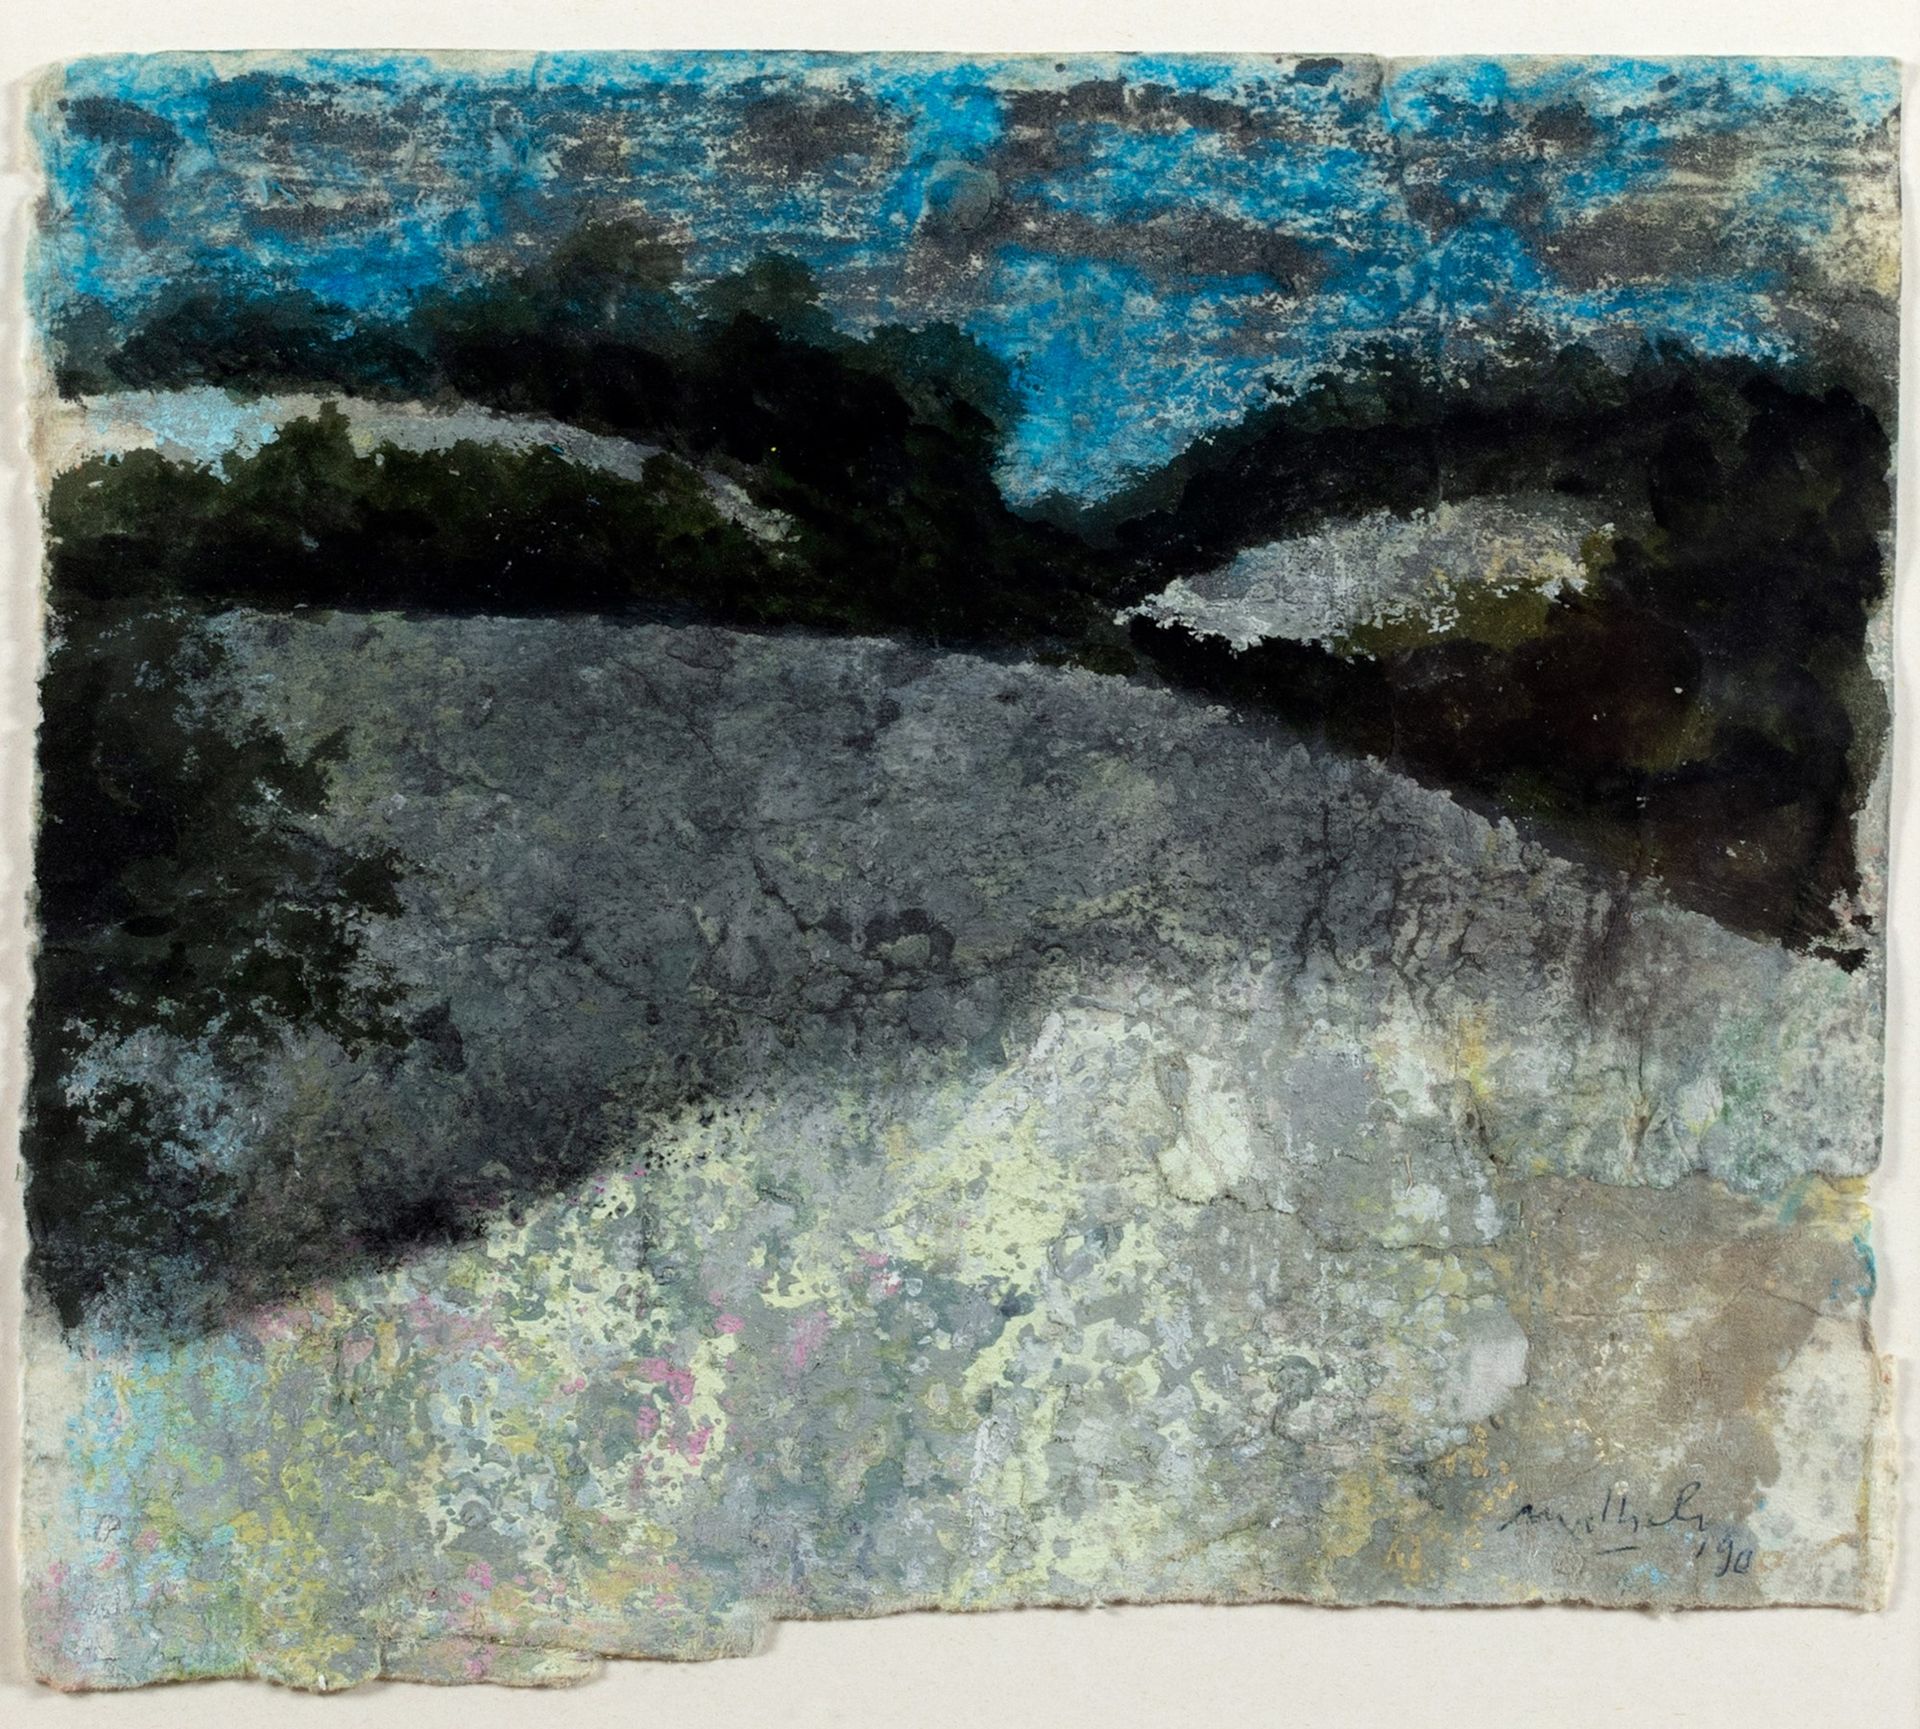 CARLO MATTIOLI Landschaft, 1990

Mischtechnik auf Karton
25 x 27,5 cm
Signiert u&hellip;